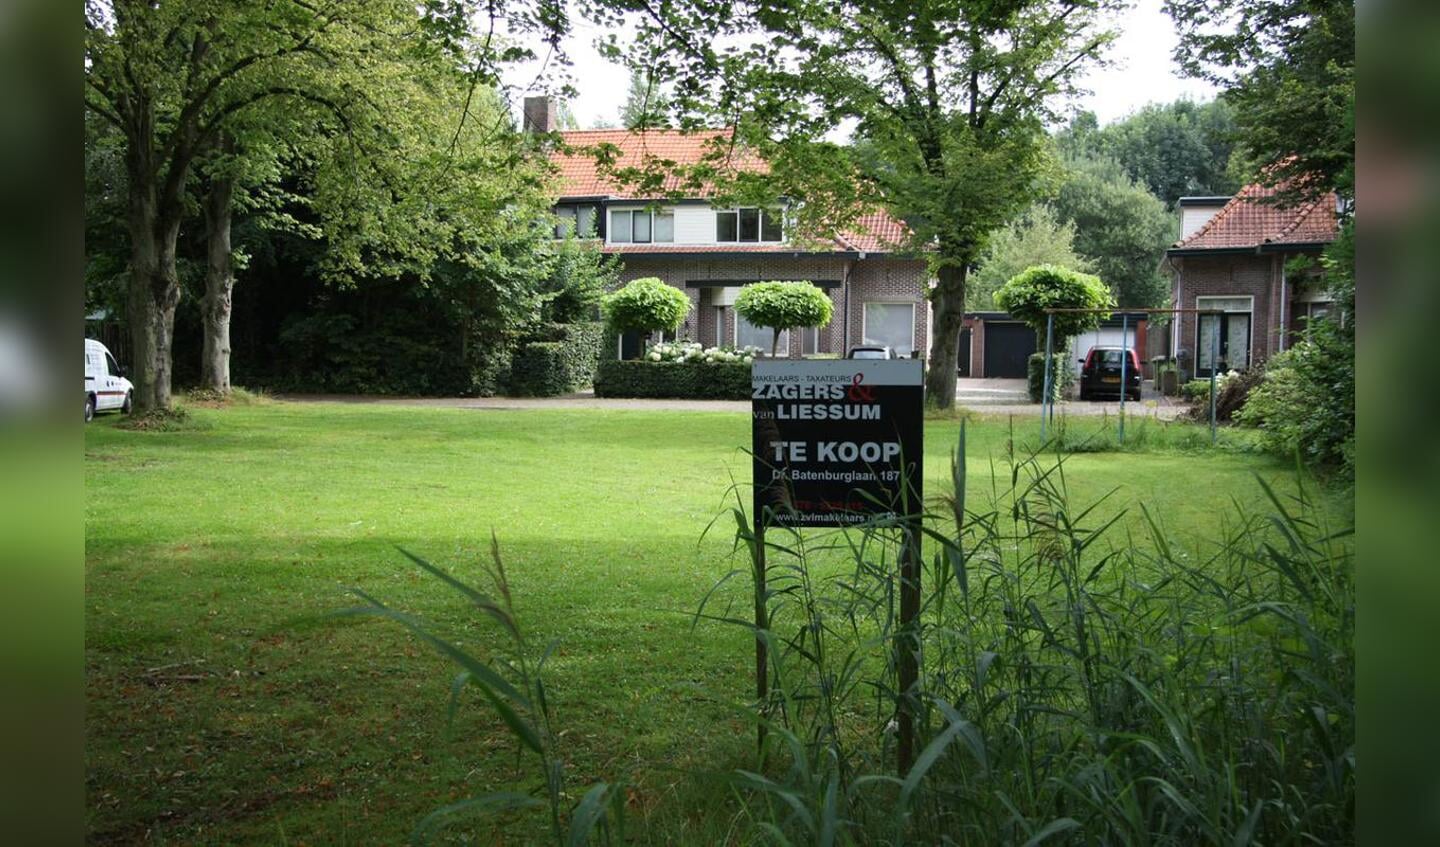 Huizen en grond te koop aan de Dr. Batenburglaan in Breda. foto Erik Eggens